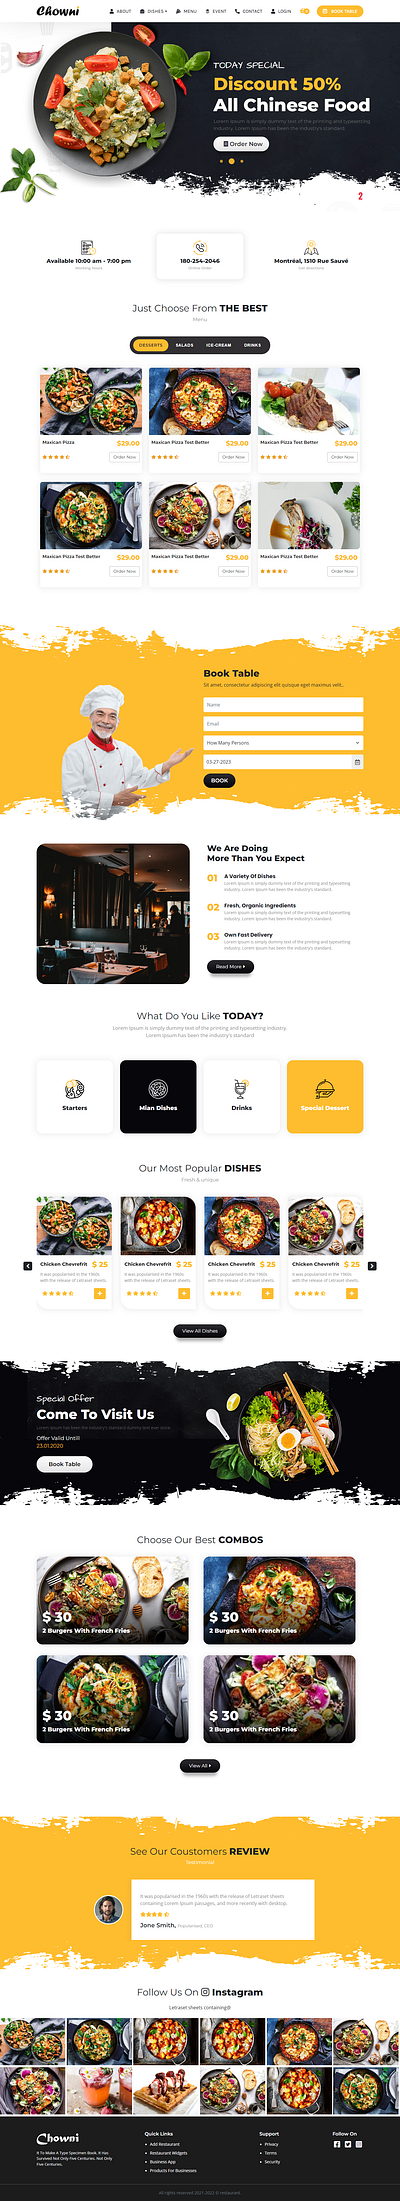 Restaurant Mock Up Design bootstrap design graphic design illustration mock up restaurant design